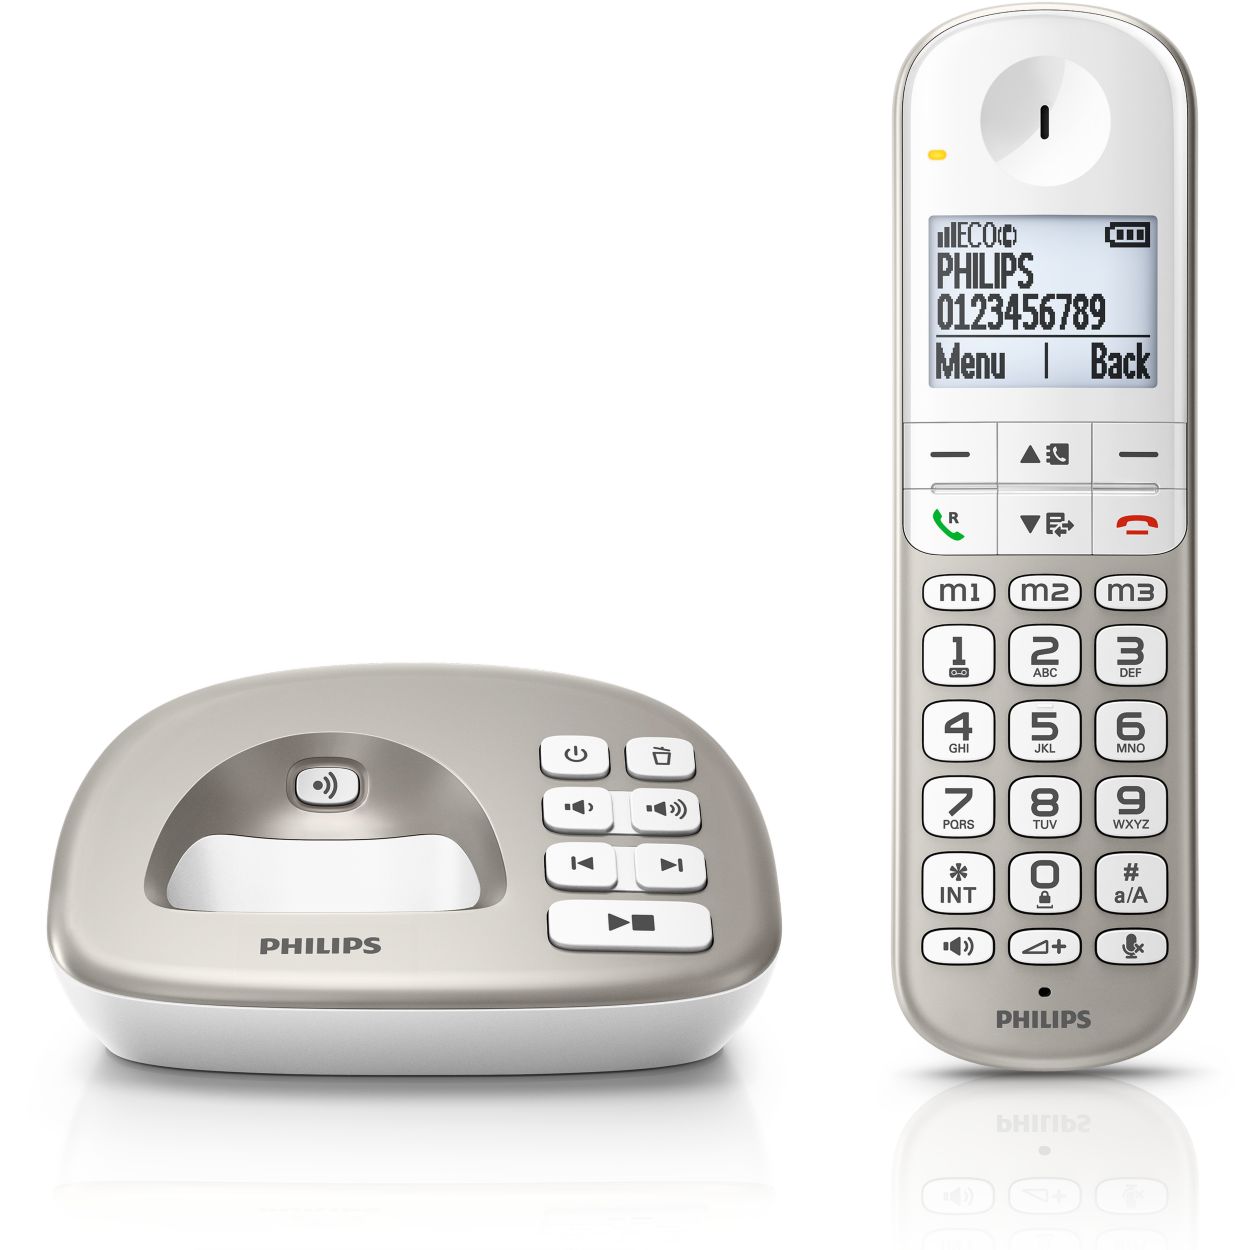 Philips XL4951DS - Téléphone DECT avec Répondeur - Téléphone